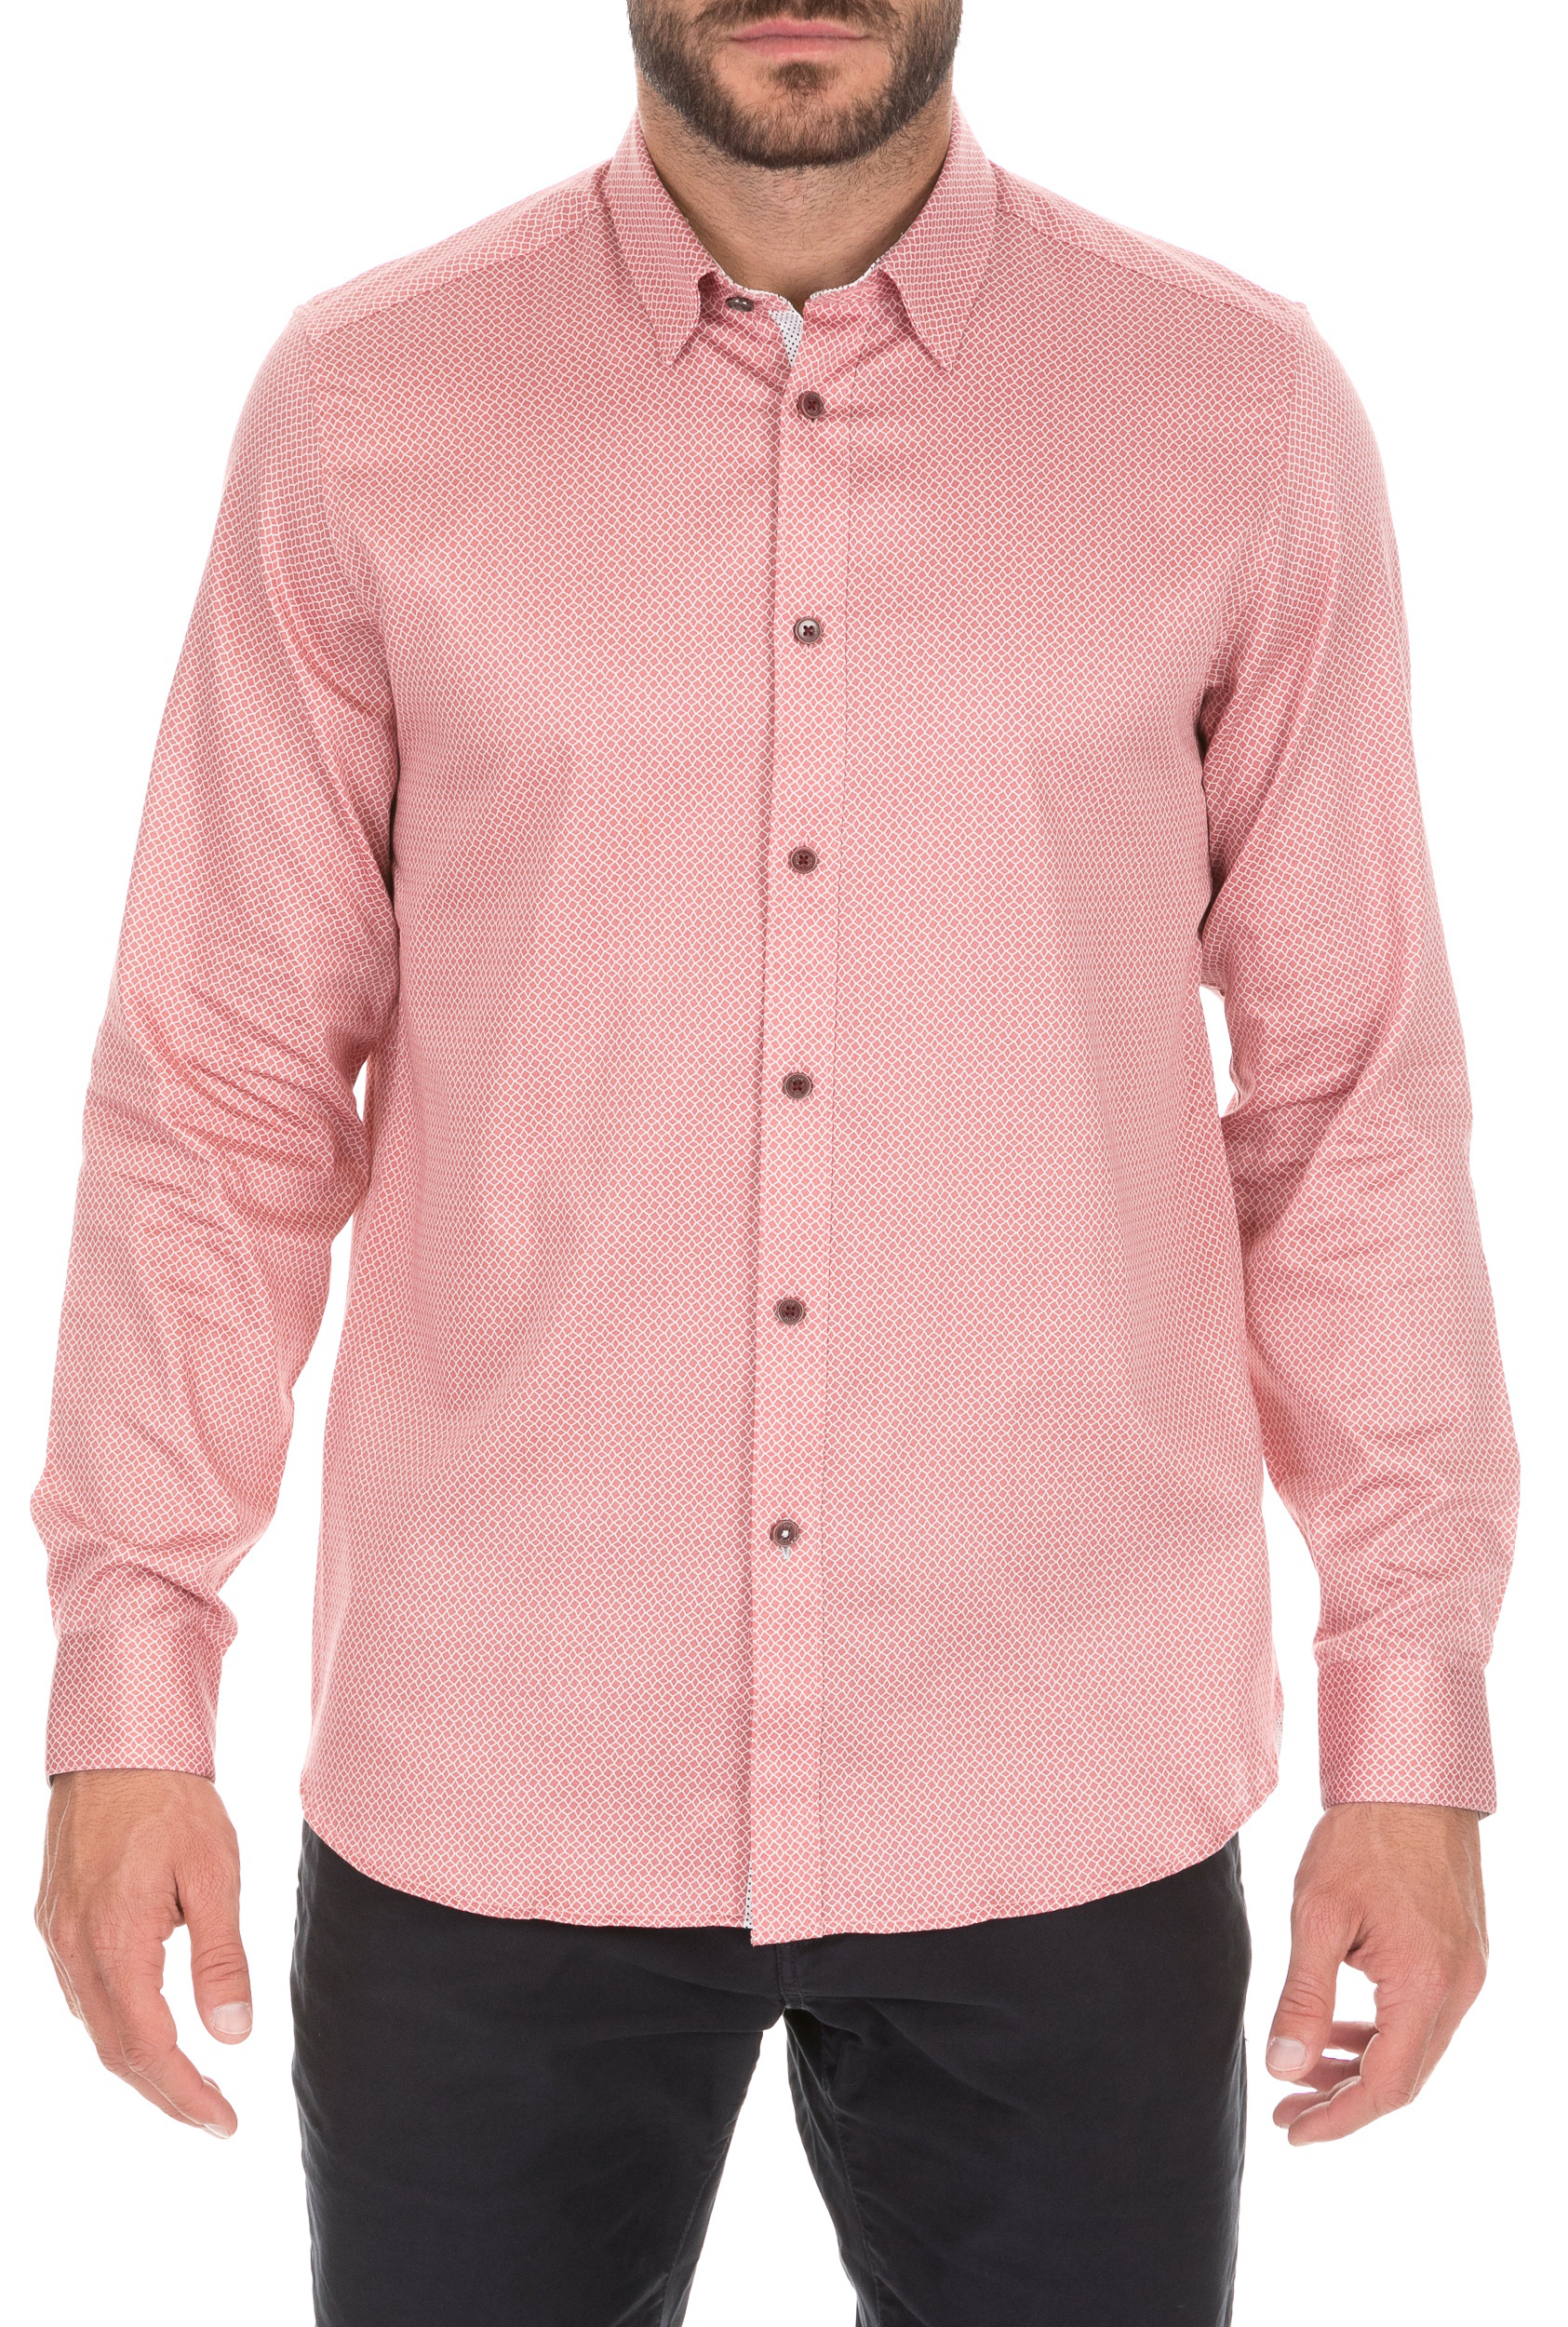 Ανδρικά/Ρούχα/Πουκάμισα/Μακρυμάνικα TED BAKER - Ανδρικό πουκάμισο TED BAKER BRADLEY ροζ